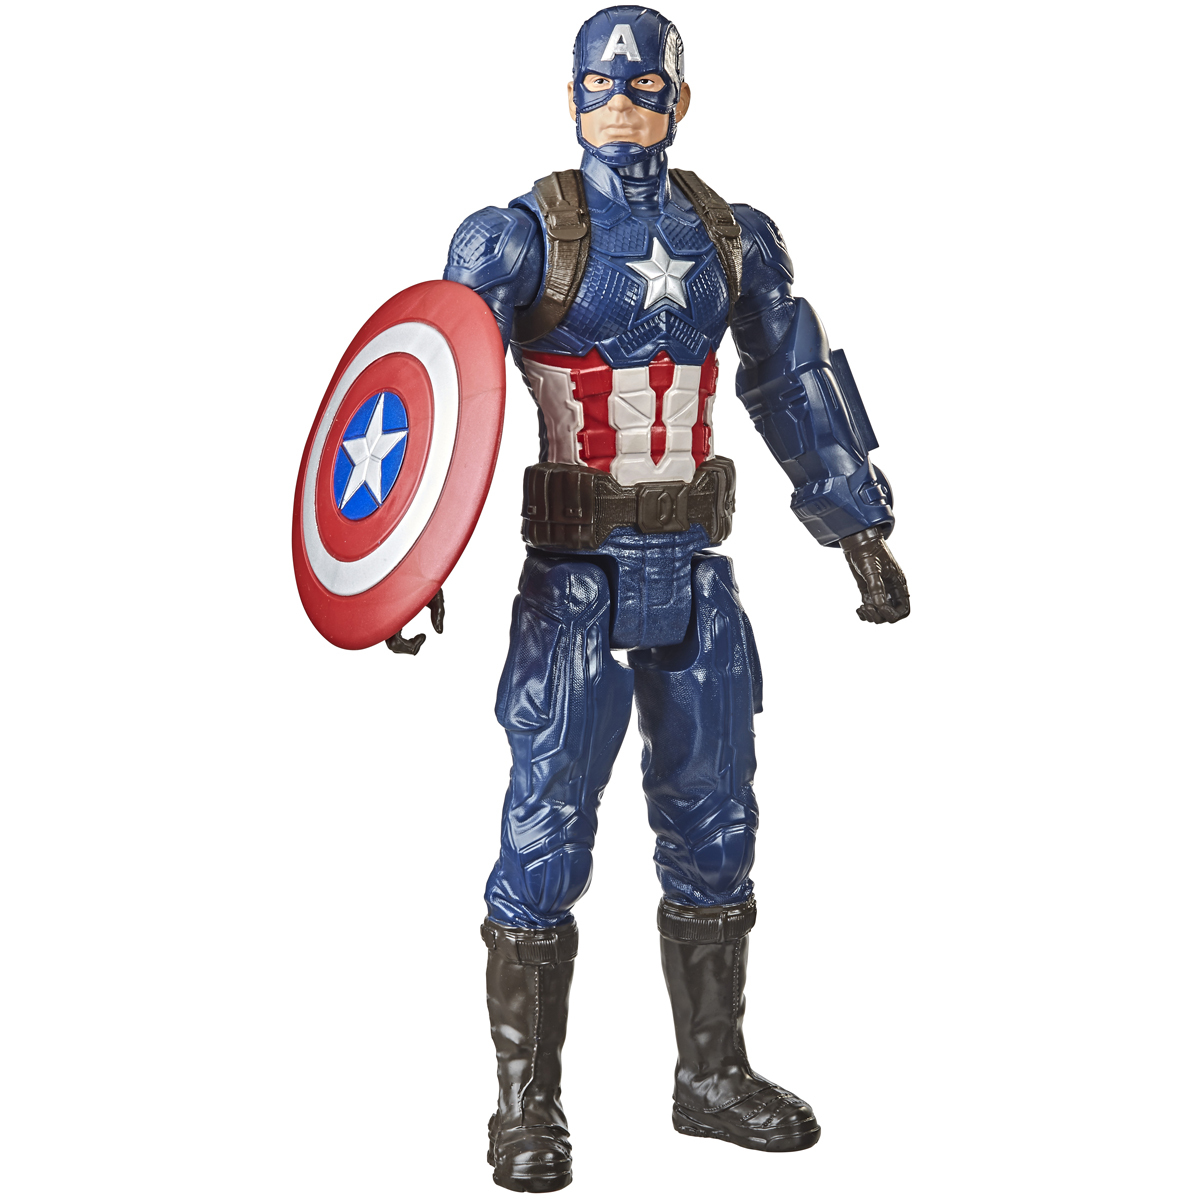 Marvel Avengers Endgame Titan Hero - Captain America 30cm Figure